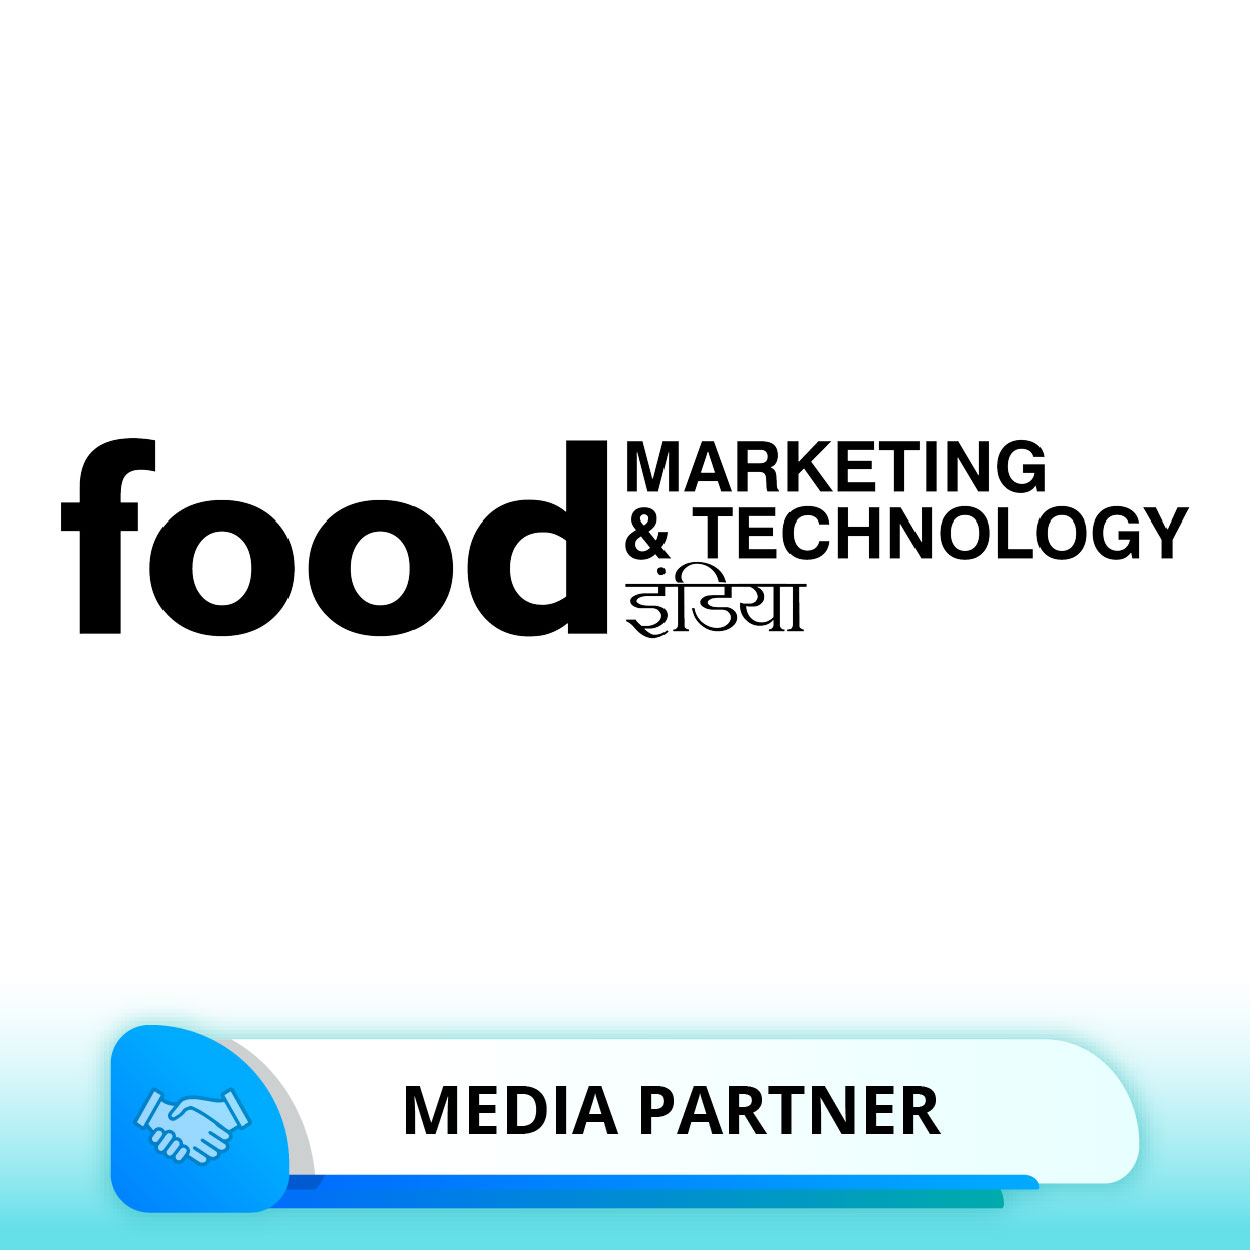 Food Marketing & Technology Magazine, India